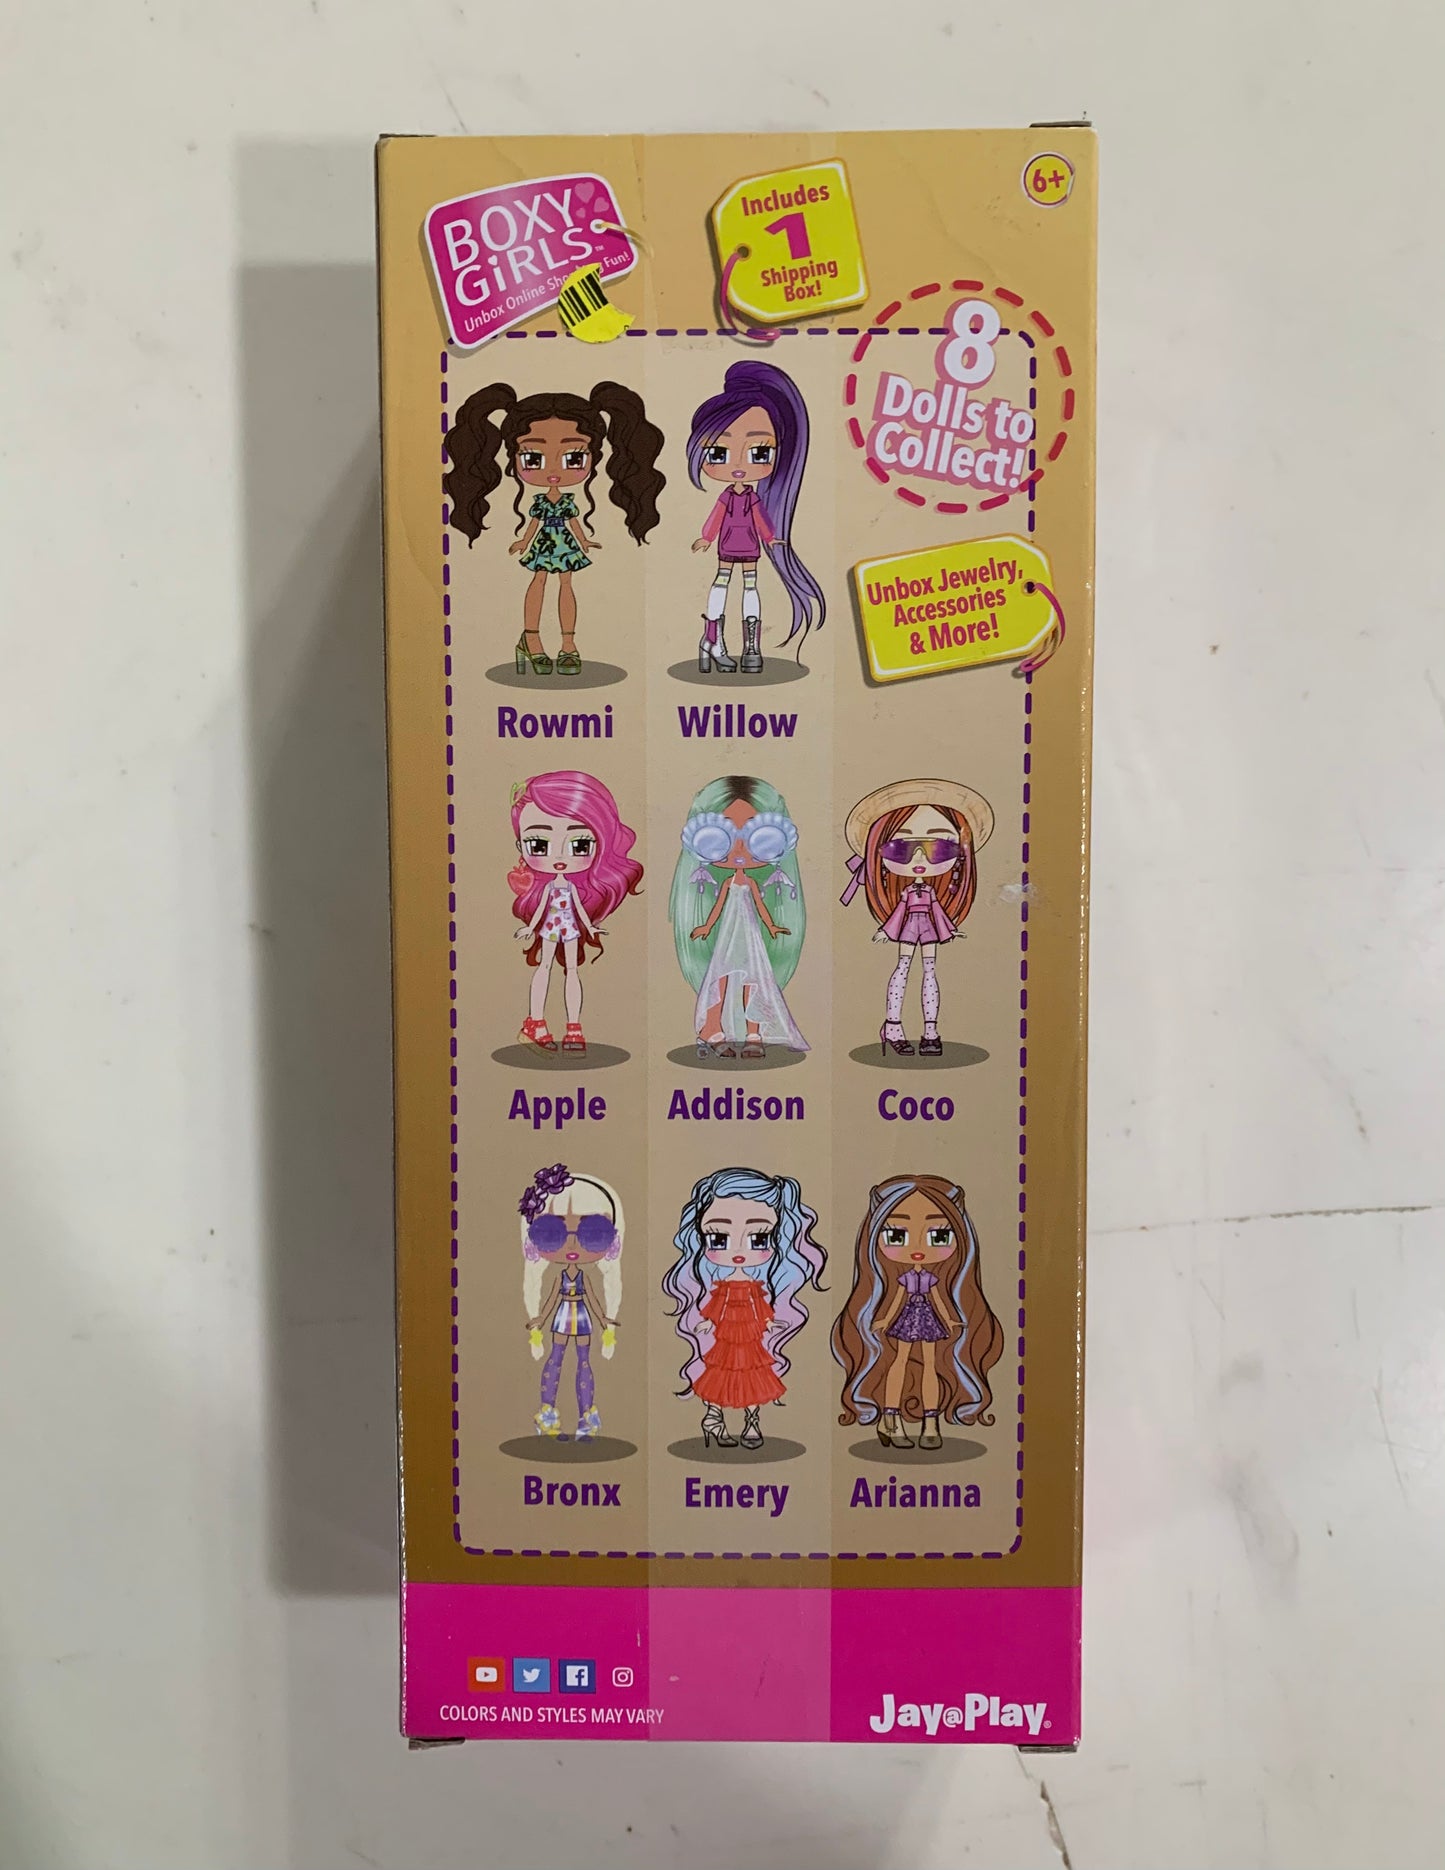 Boxy Girls Bronx 8” Doll 02078A